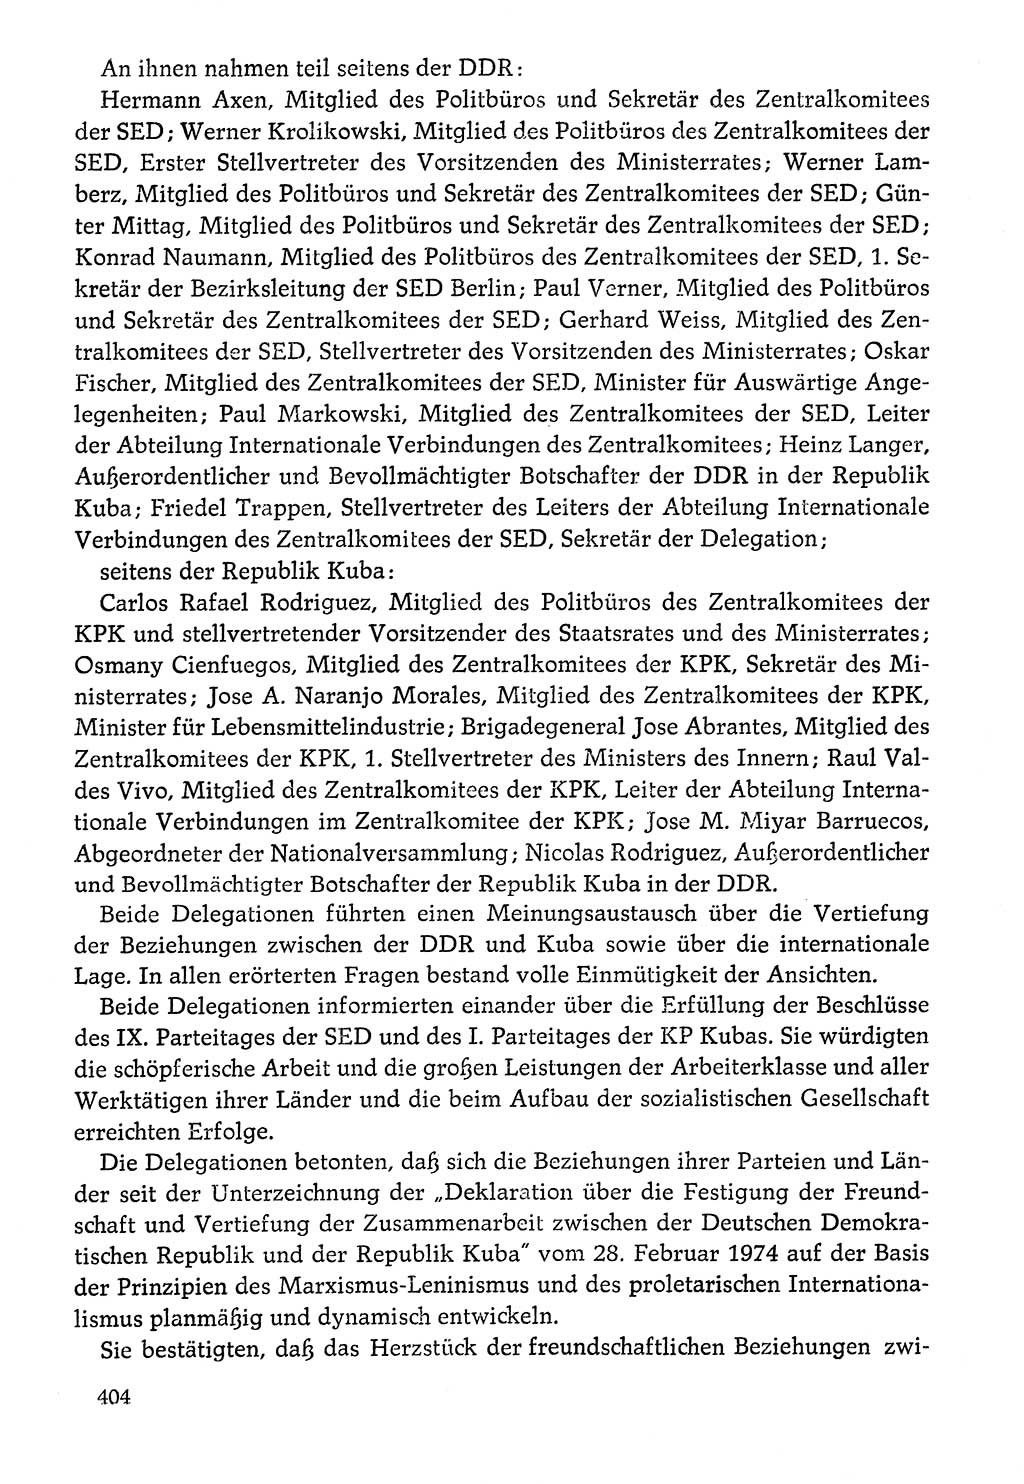 Dokumente der Sozialistischen Einheitspartei Deutschlands (SED) [Deutsche Demokratische Republik (DDR)] 1976-1977, Seite 404 (Dok. SED DDR 1976-1977, S. 404)